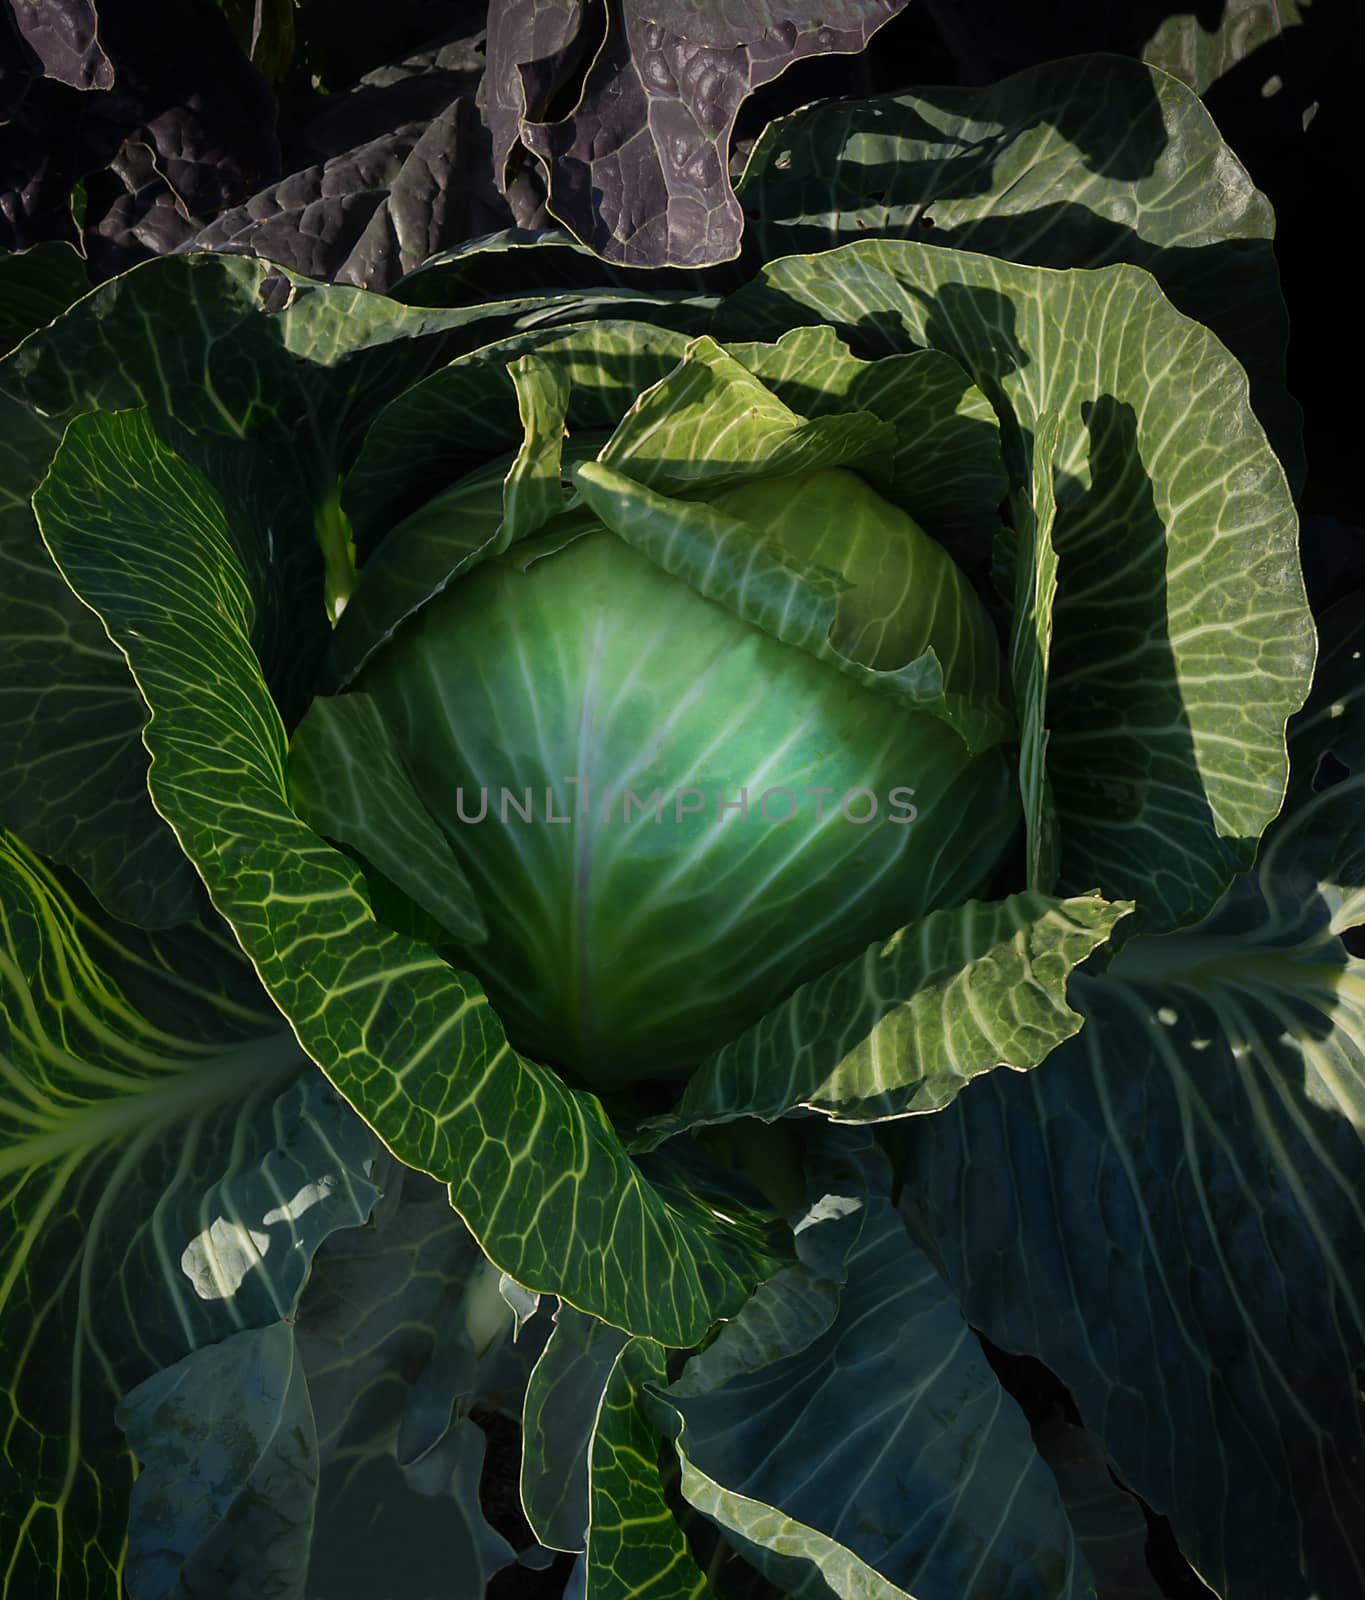 Cabbage closeup Brassica oleracea